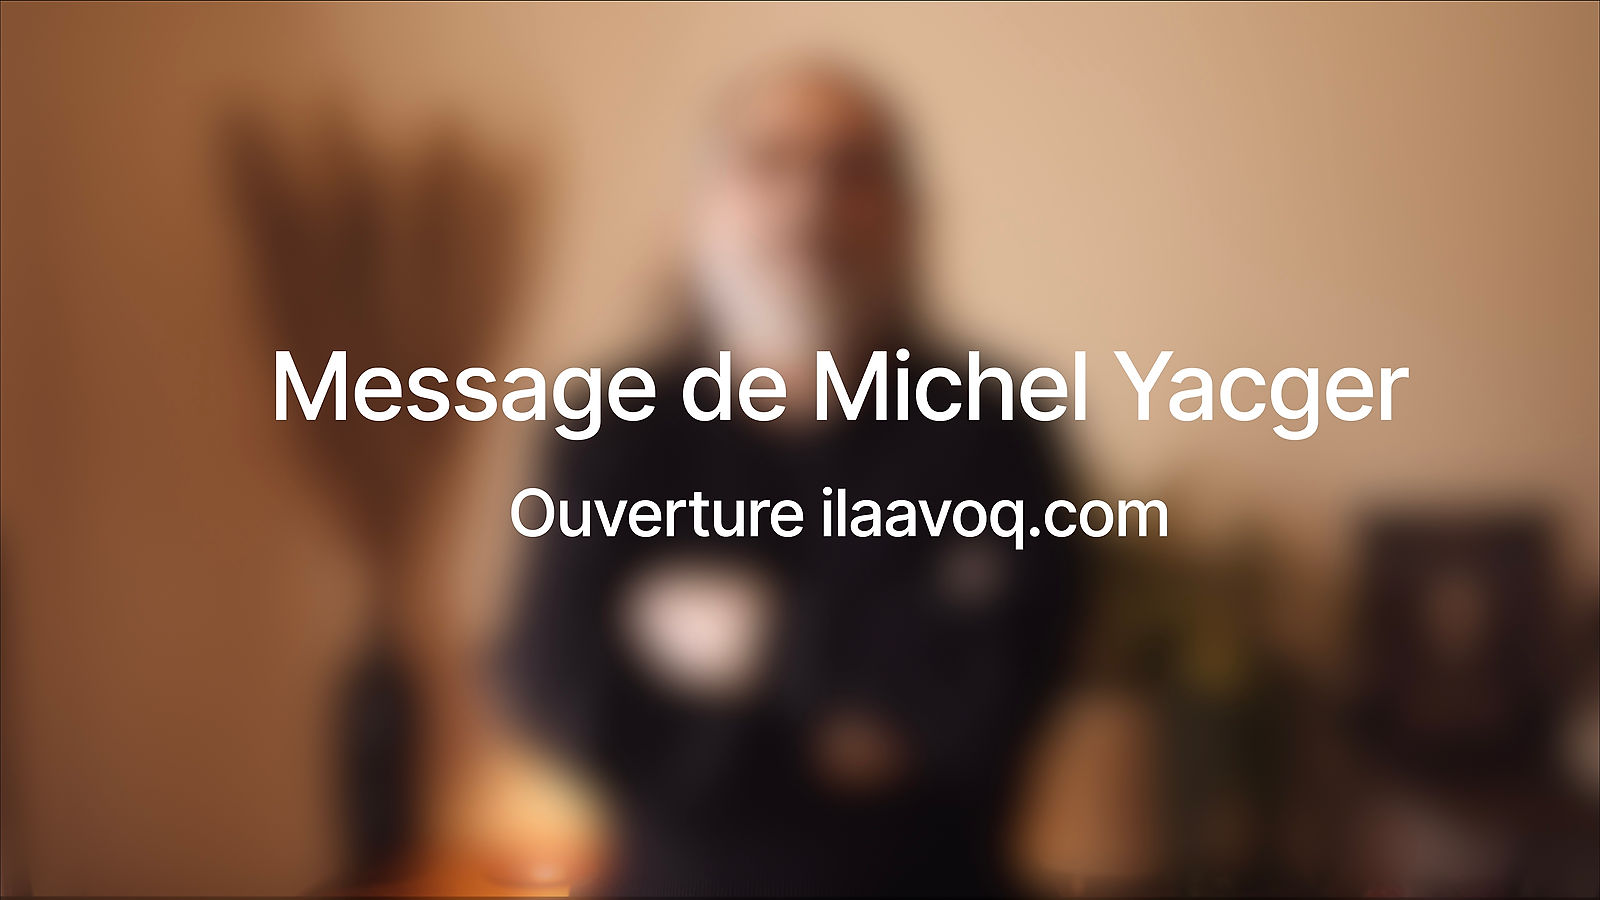 Message de Michel Yacger - Ouverture ilaavoq.com